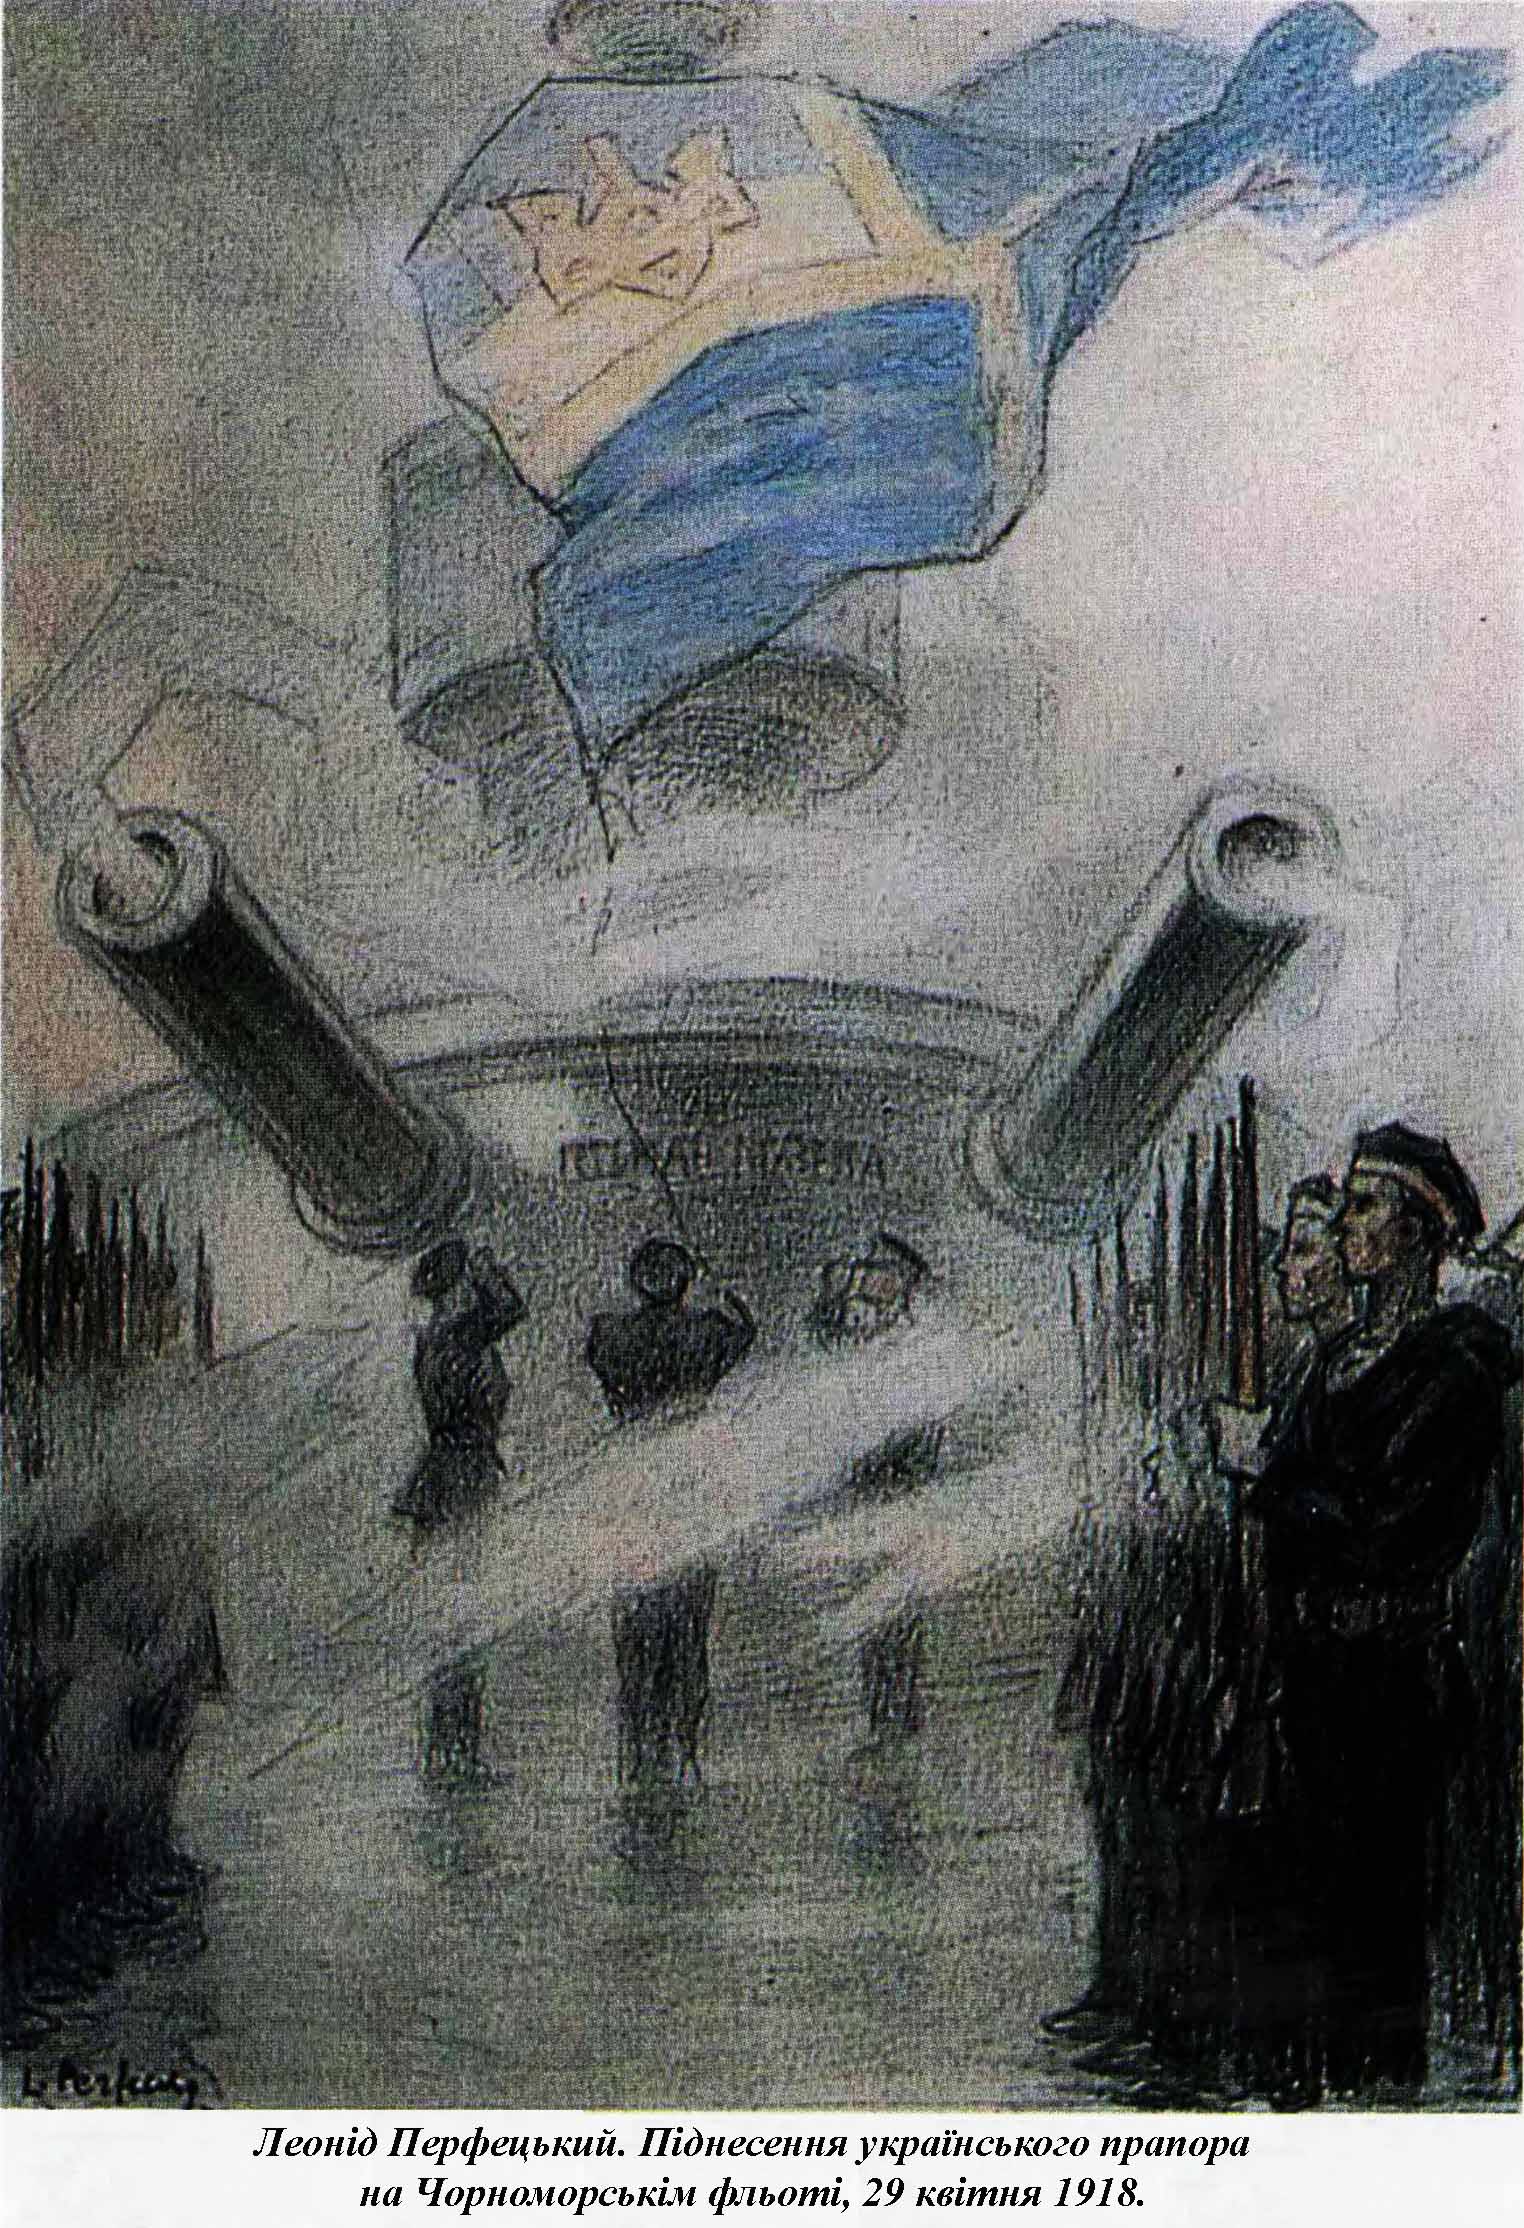 Ілюстрація Леоніда ПерфецькОГО. Піднесення українського прапора на Чорноморськім фльоті, 29 квітня 1918